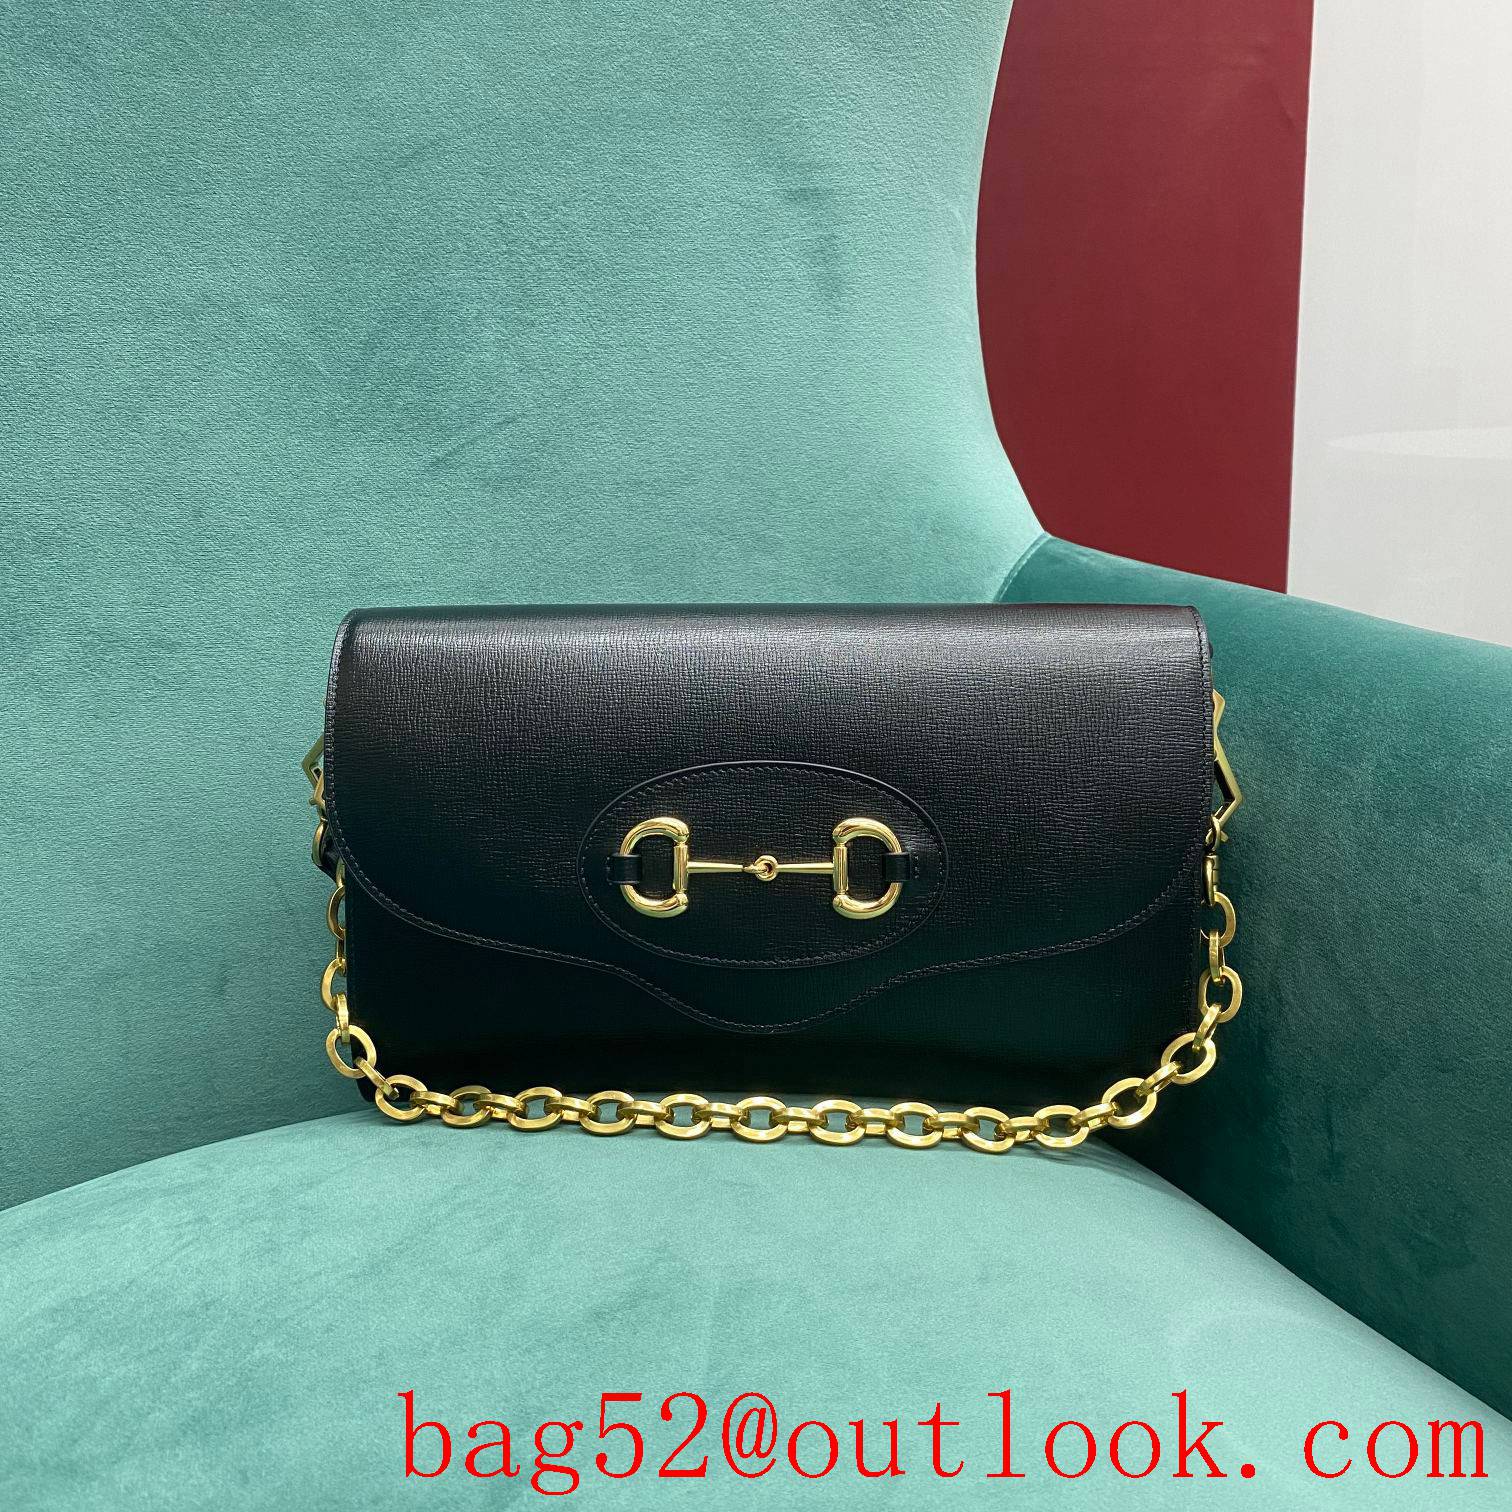 Gucci 1955 Chain Envelope black underarm handbag